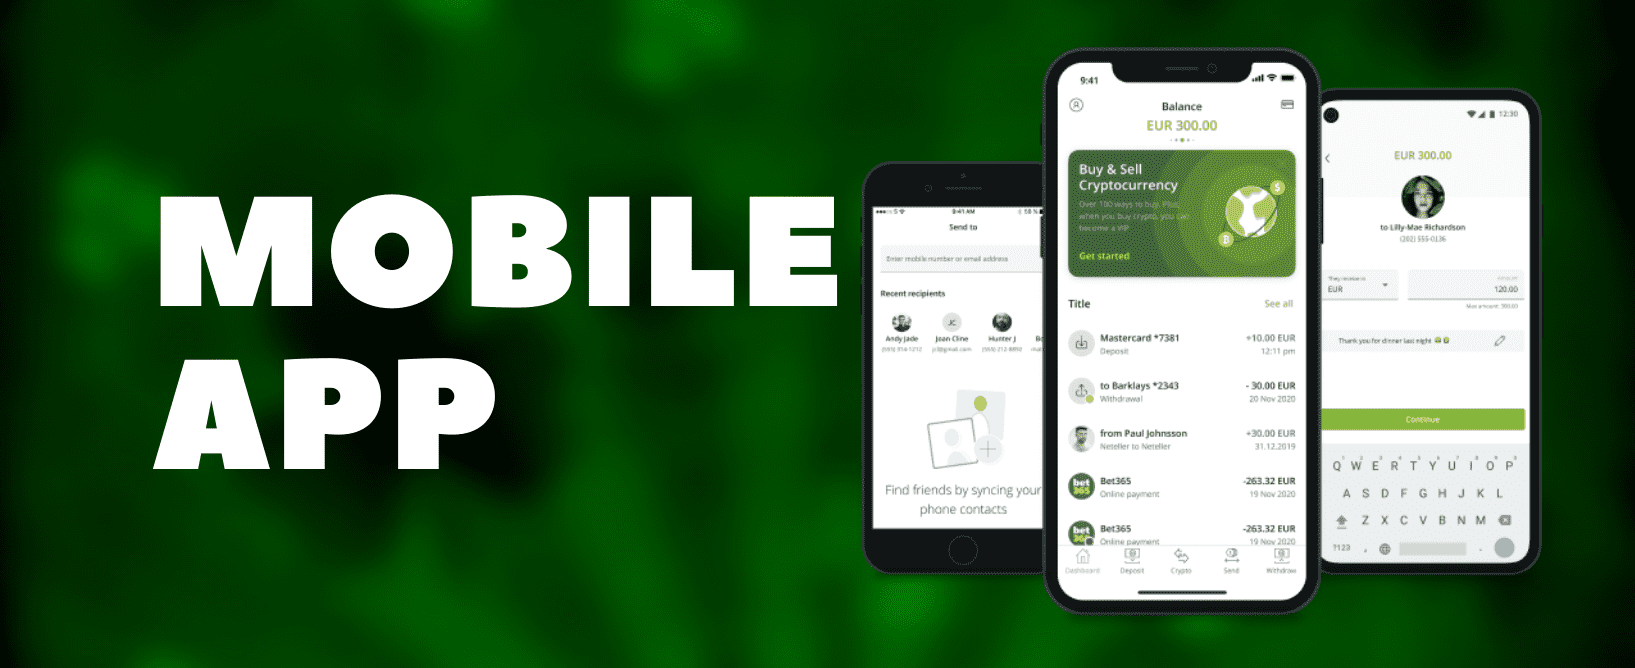 Neteller Mobile App